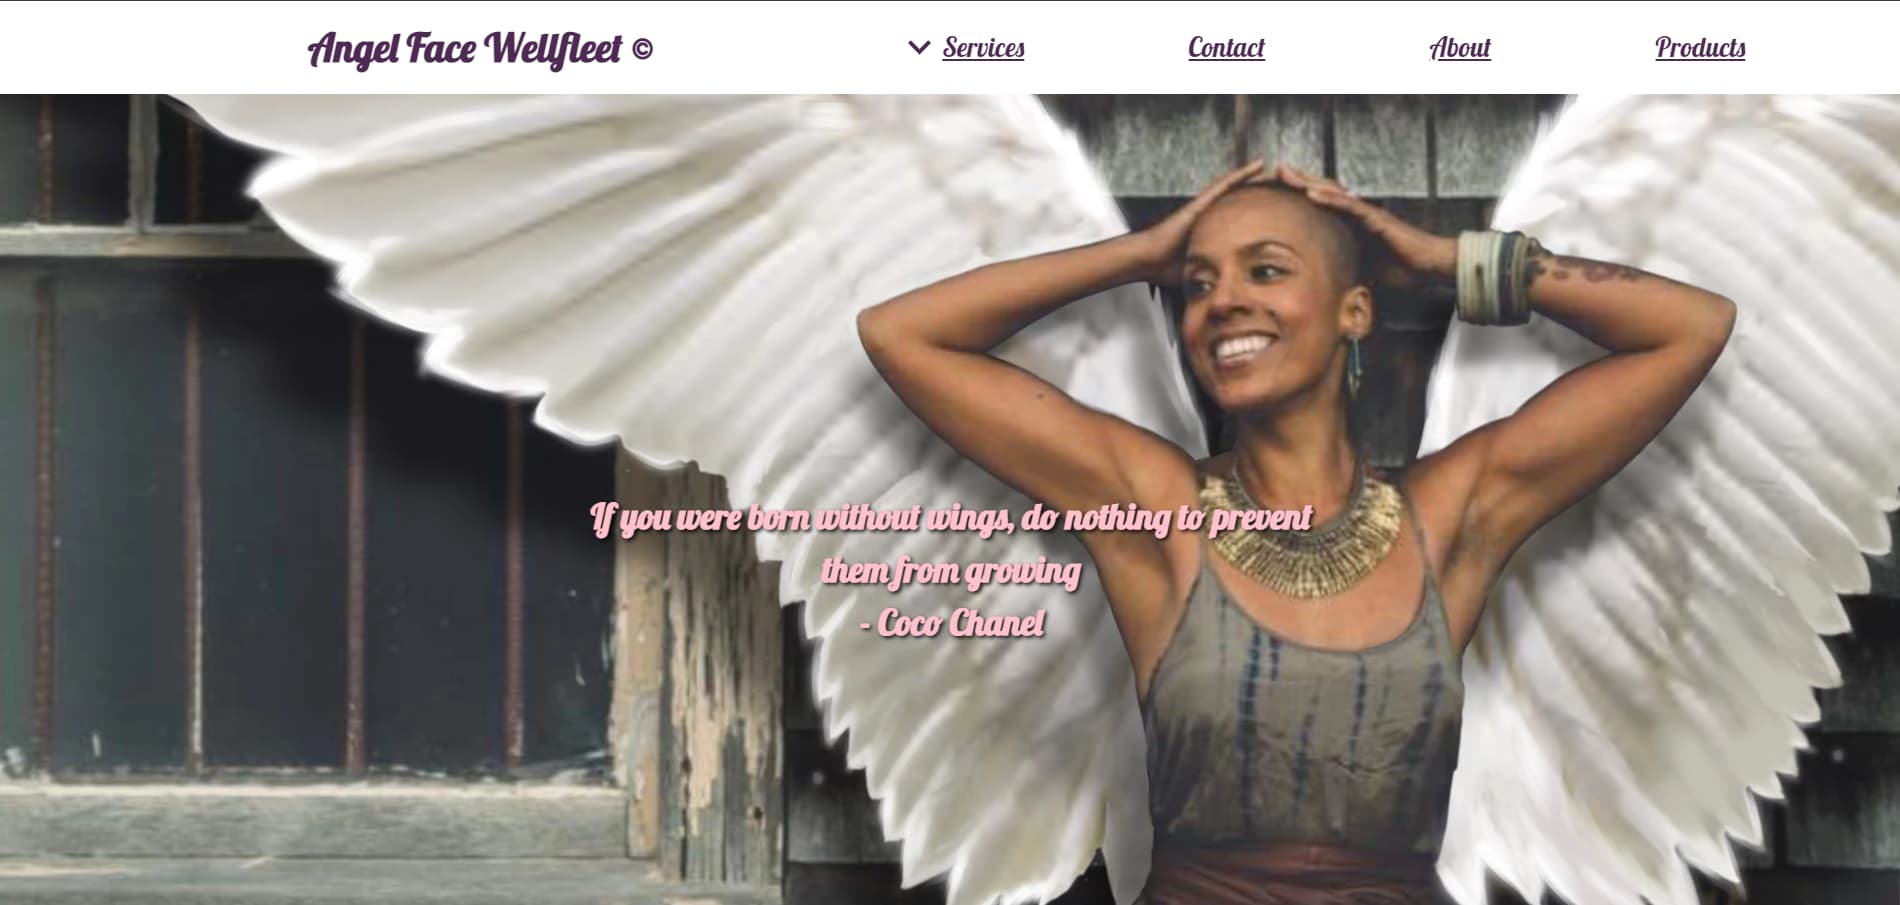 Angel Face Wellfleet website